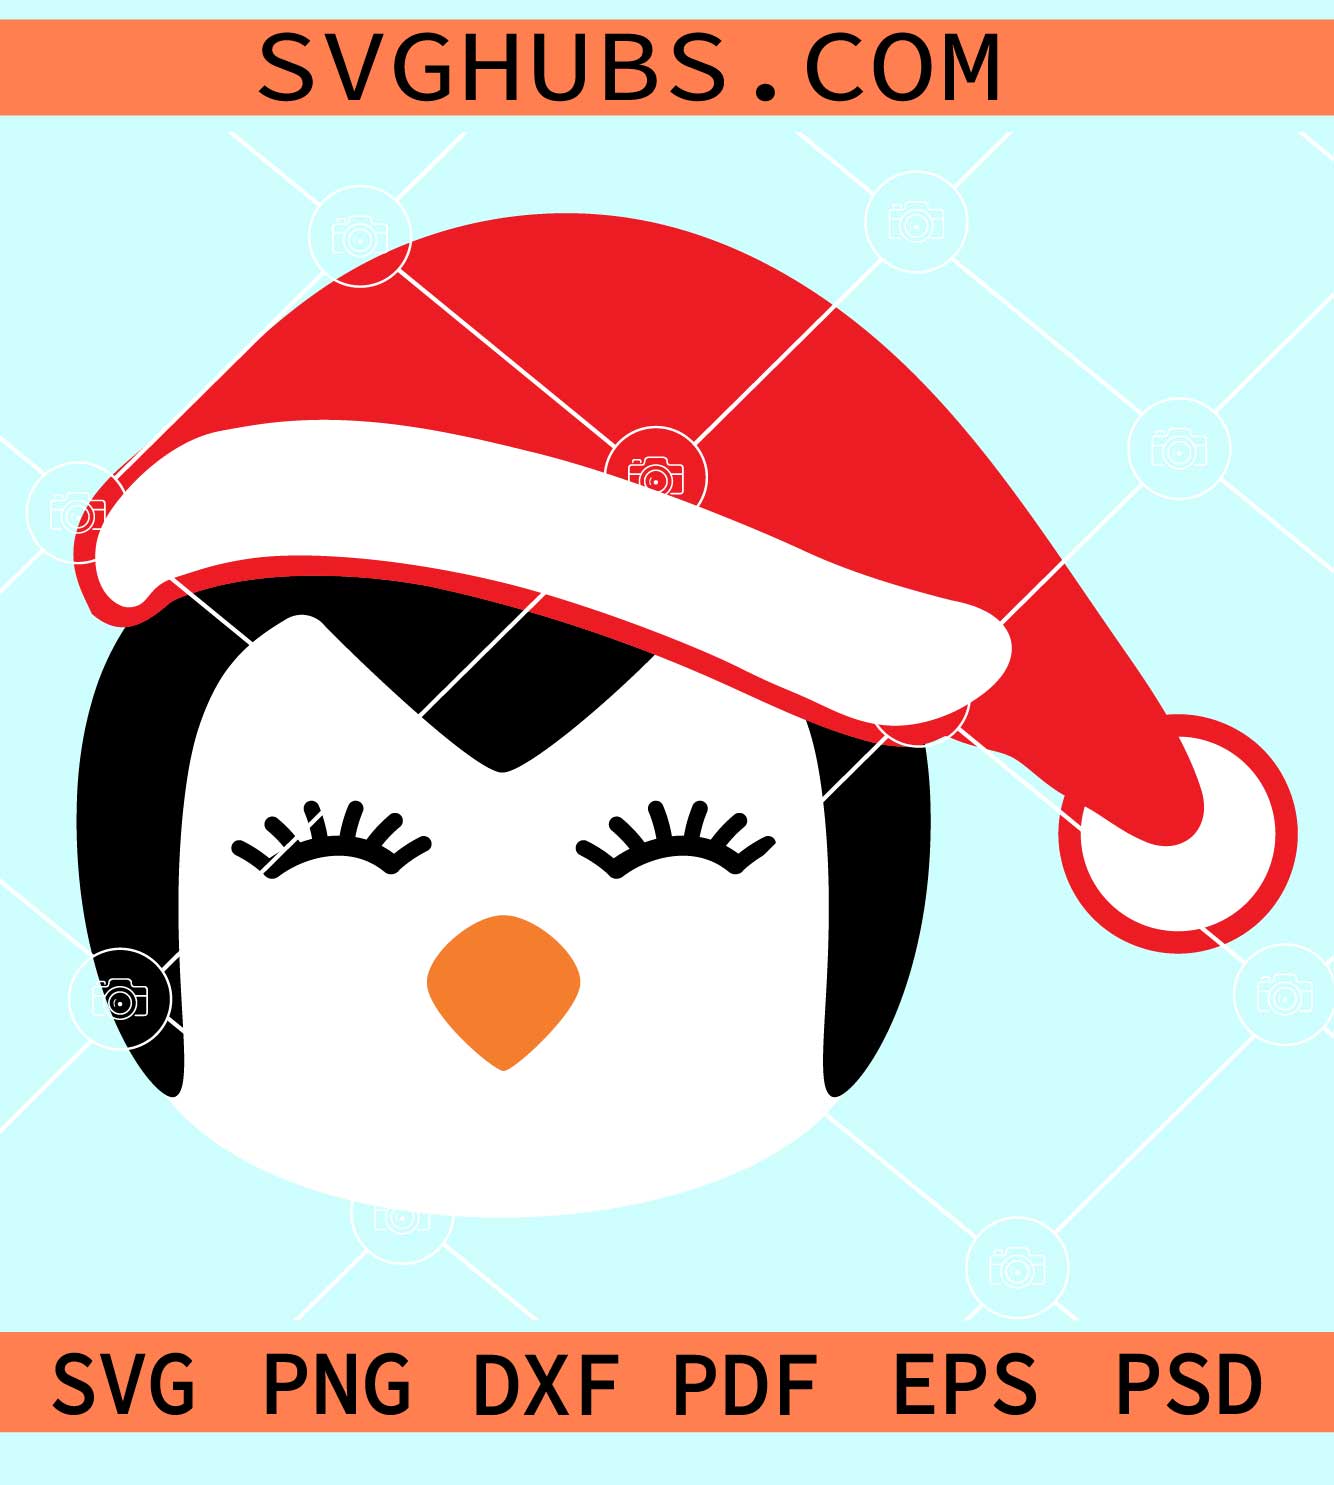 Christmas penguin SVG, Penguin with Santa hat svg, Christmas SVG file